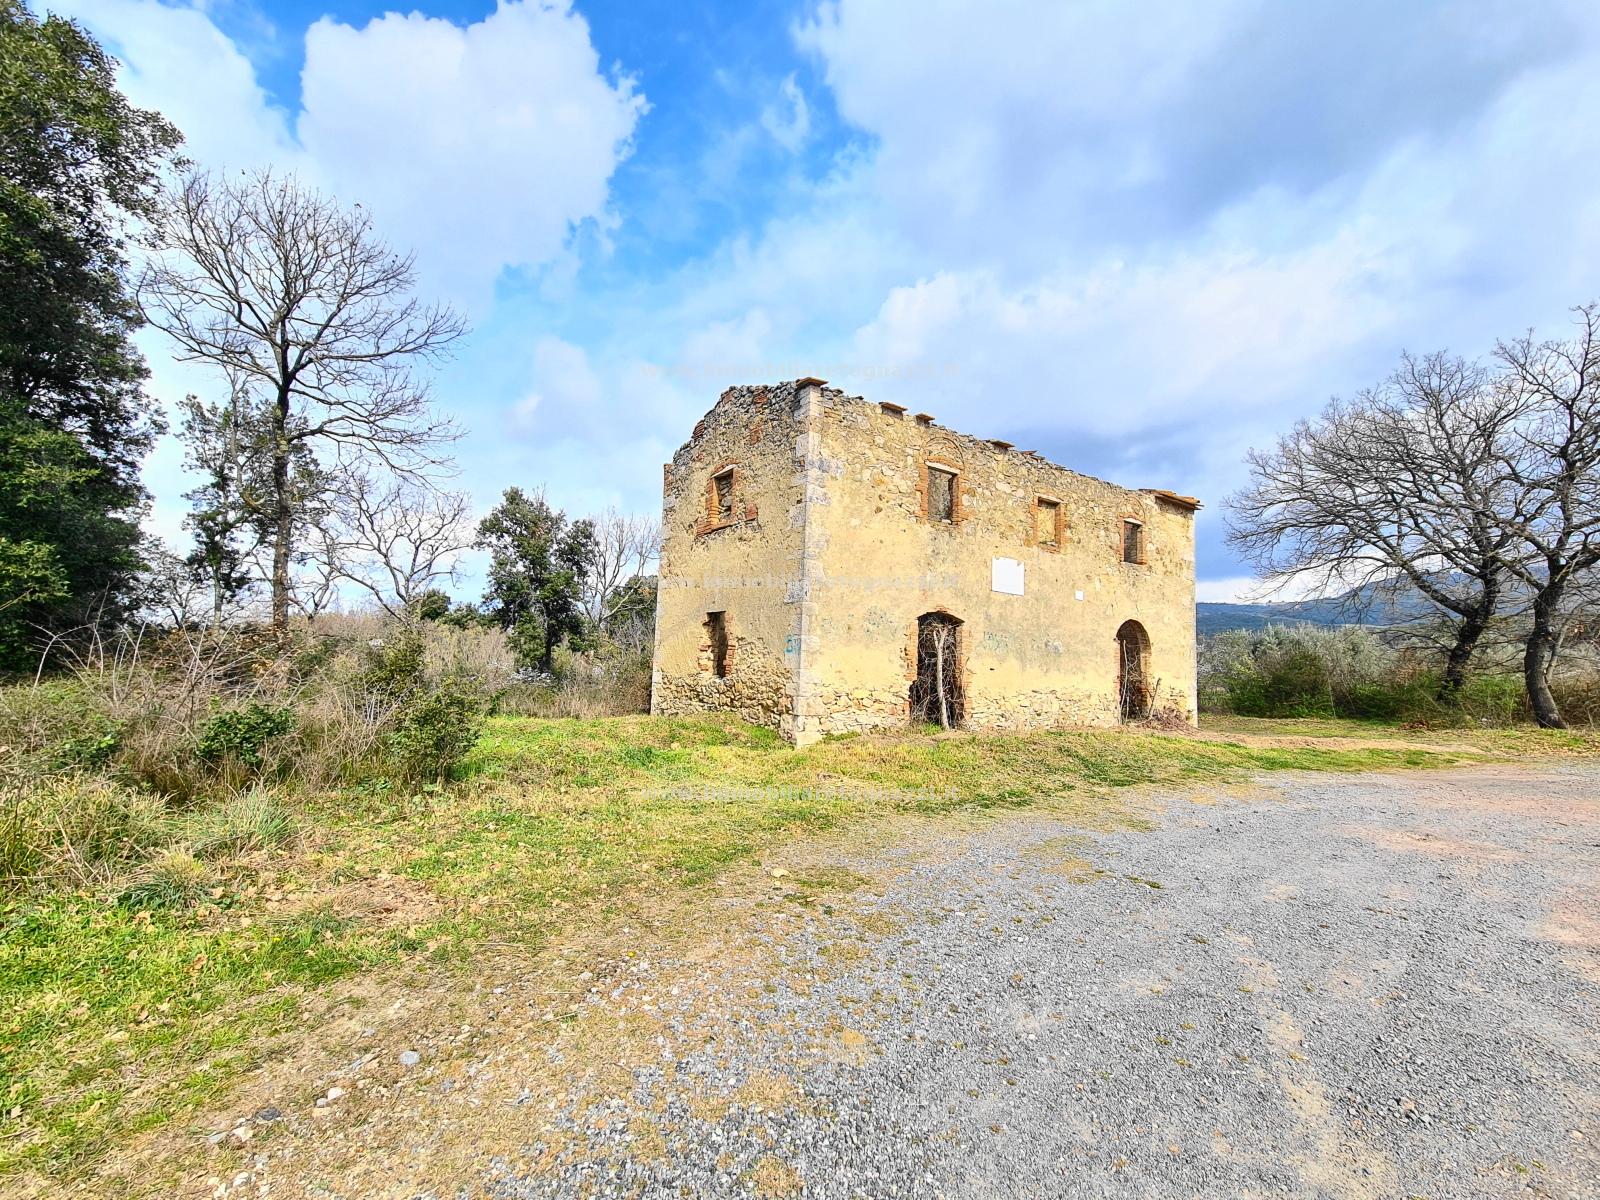 Rustico / Casale in vendita a Gambassi Terme, 6 locali, prezzo € 110.000 | PortaleAgenzieImmobiliari.it